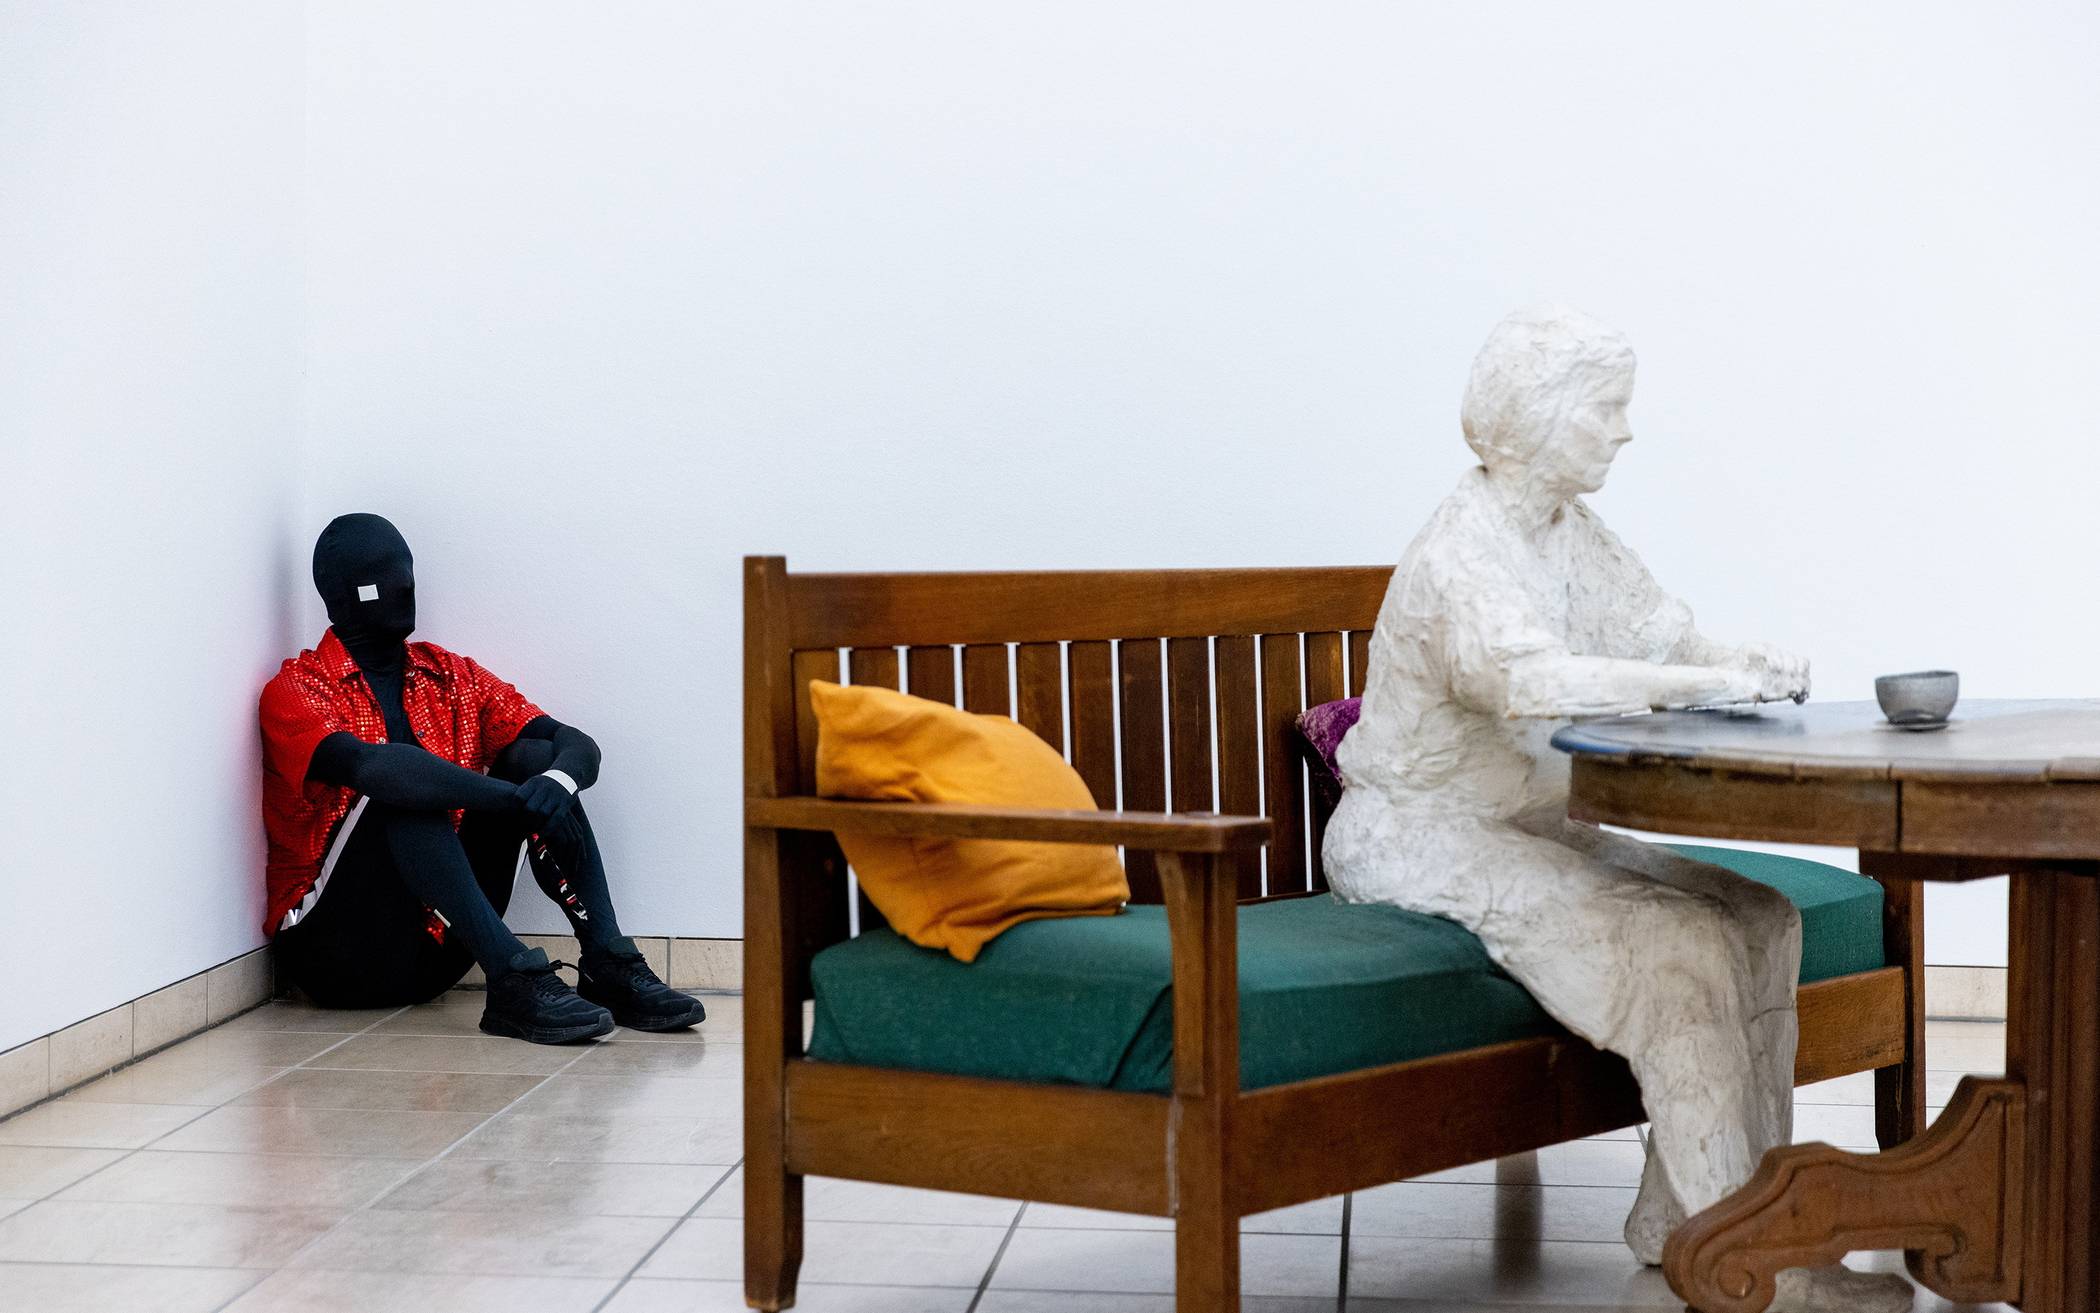  Performance im Von der Heydt-Museum: Wer ist die Skulptur, wer ist der Tänzer? 